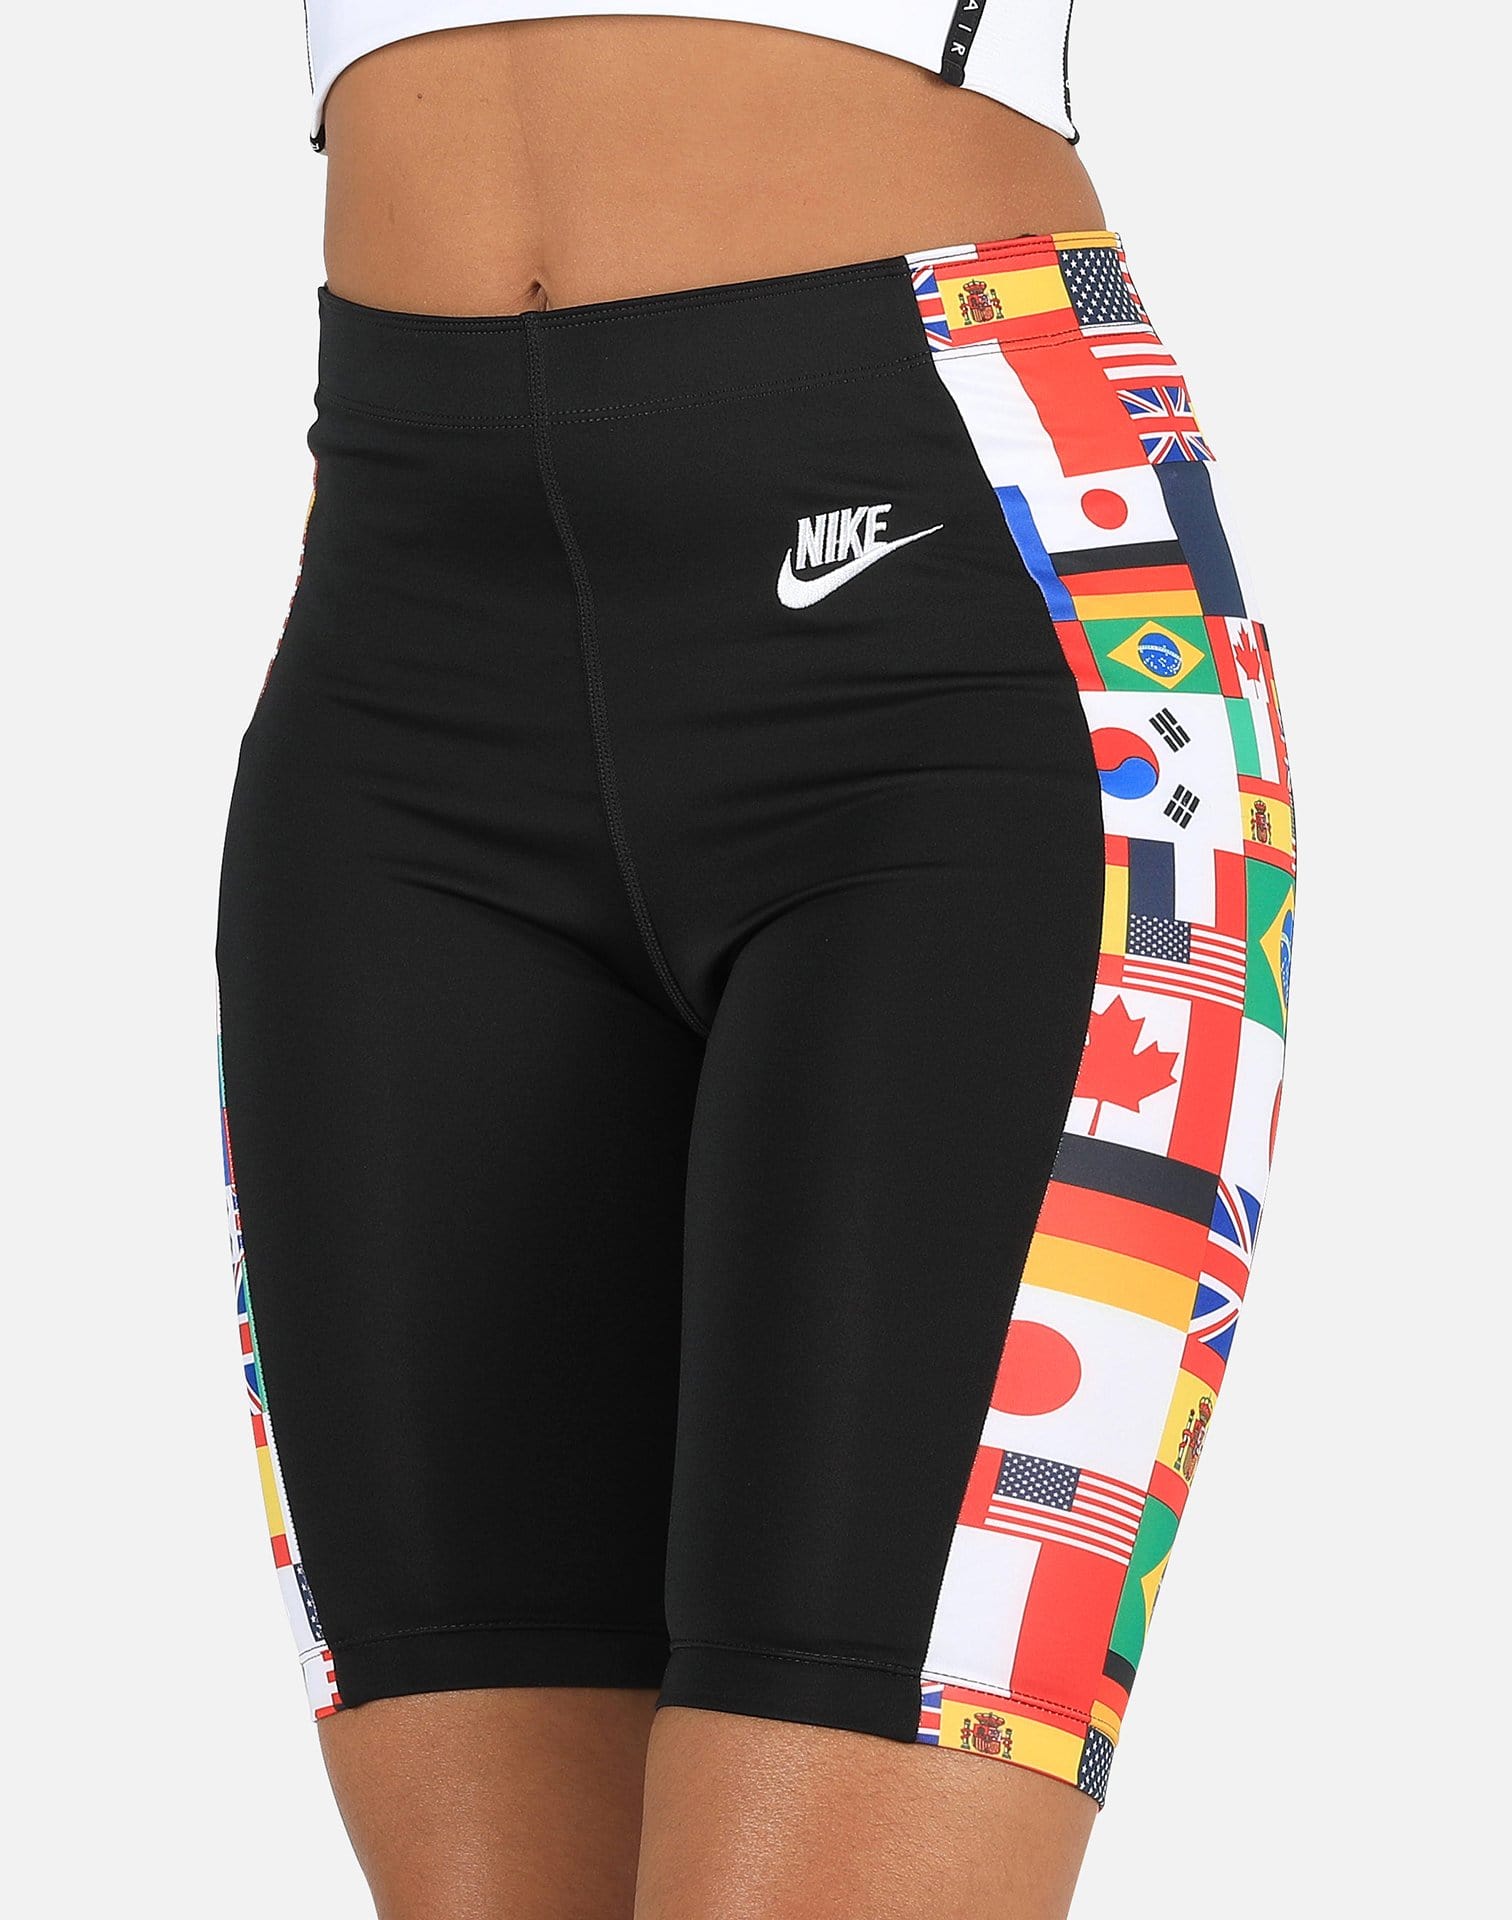 nike world flags bike shorts